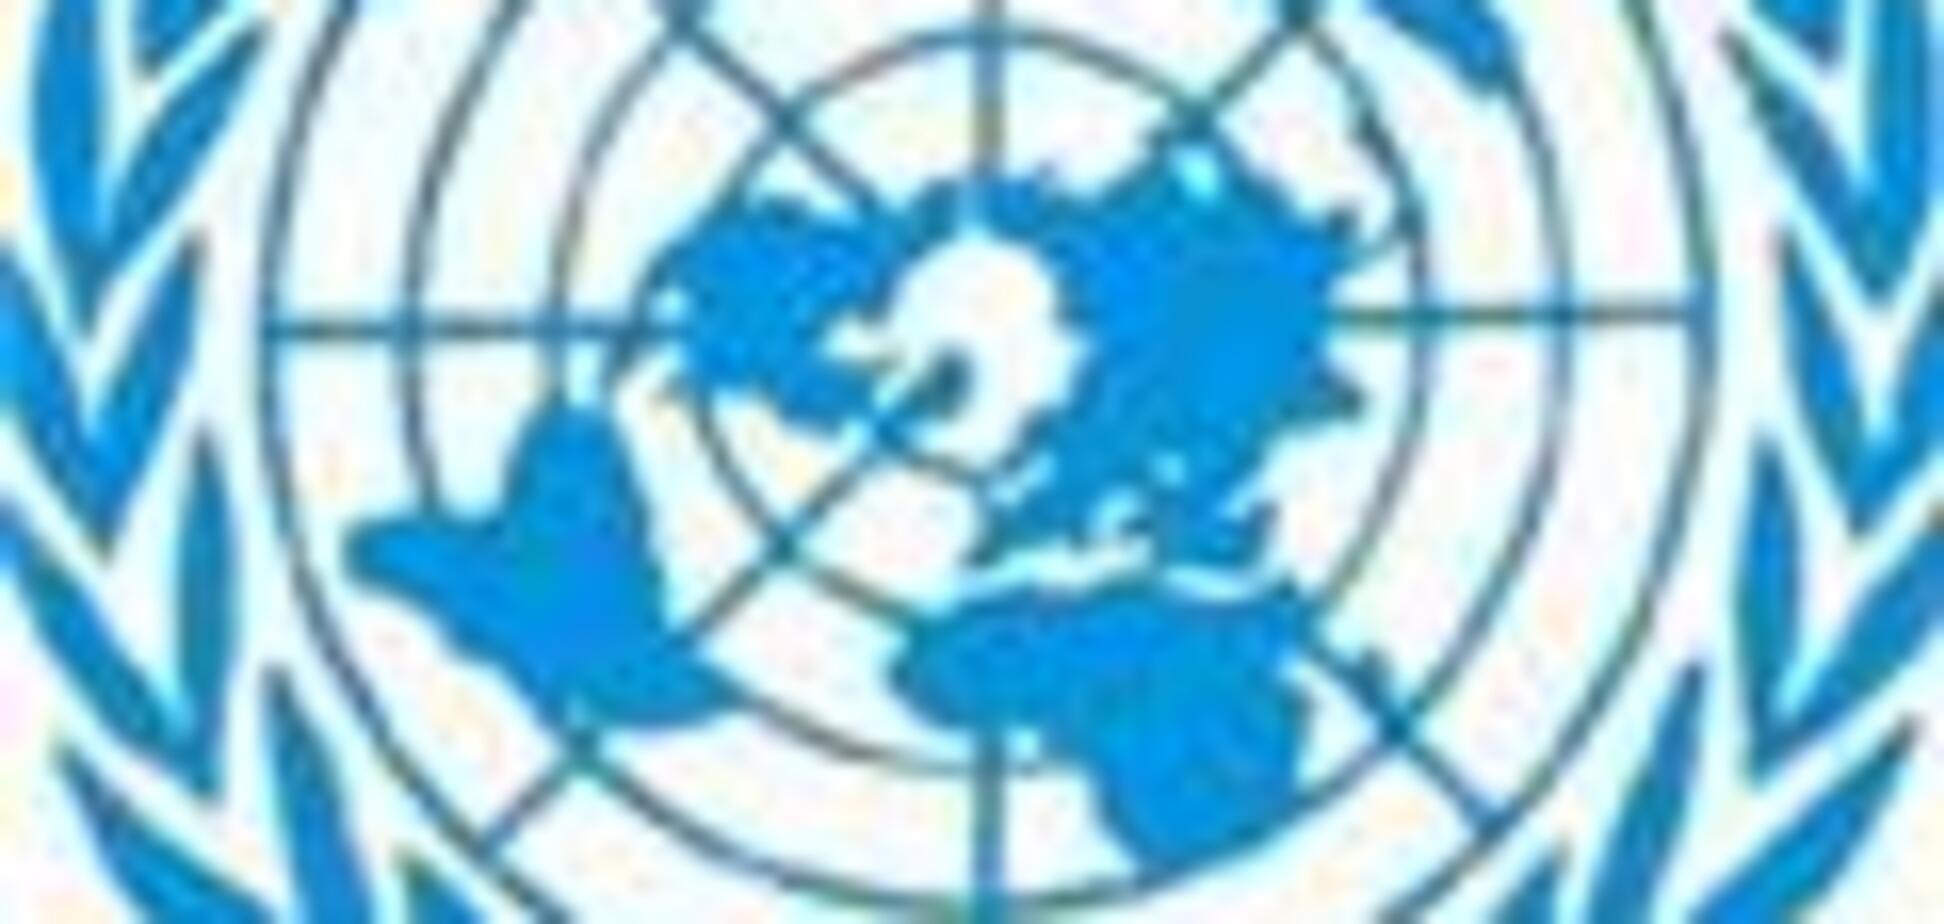 В Сомали похитили трех иностранных сотрудников ООН